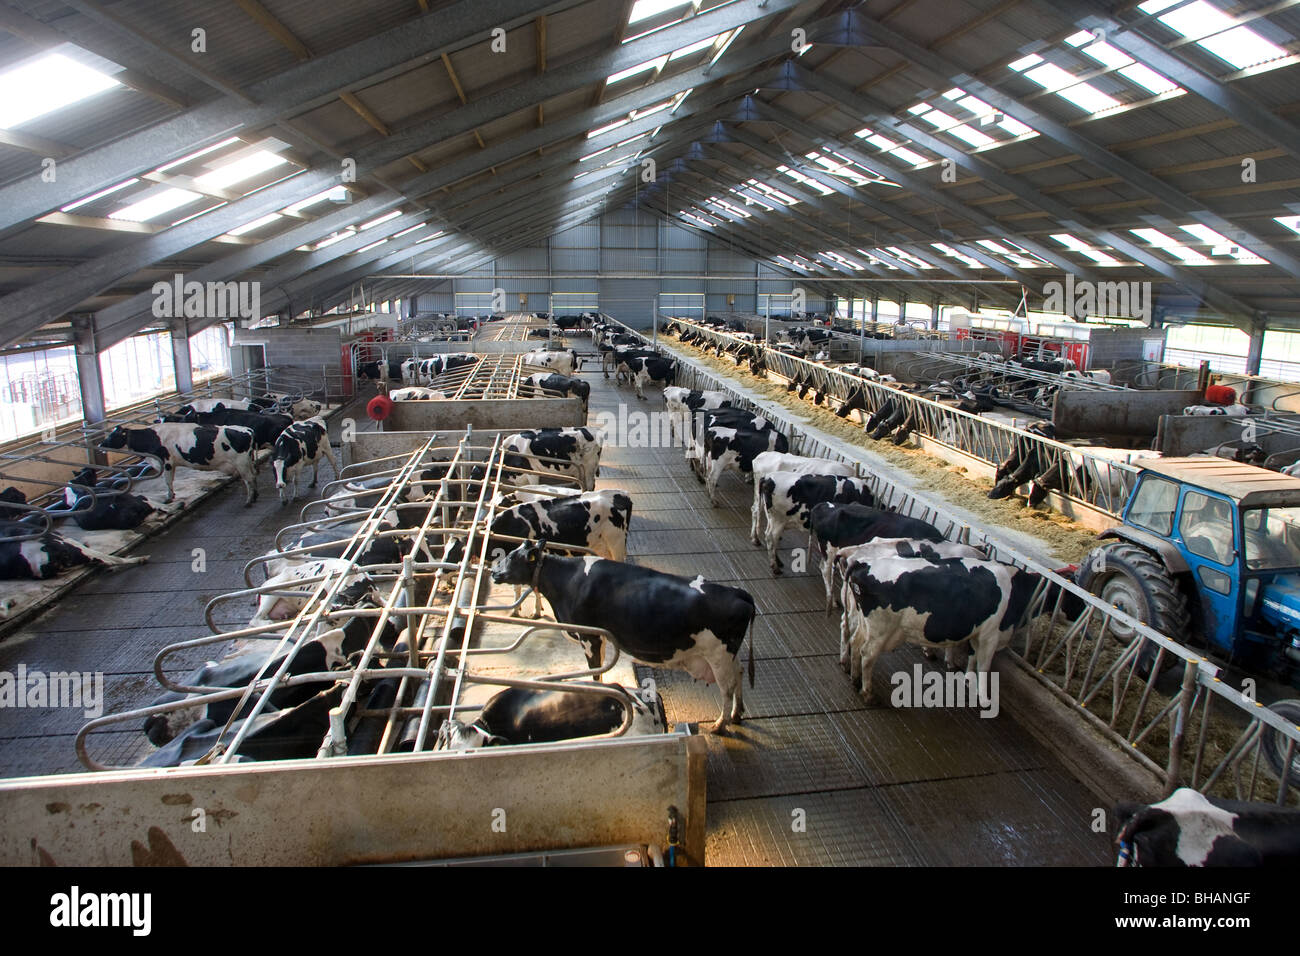 Intensivo di vacche da latte Foto Stock